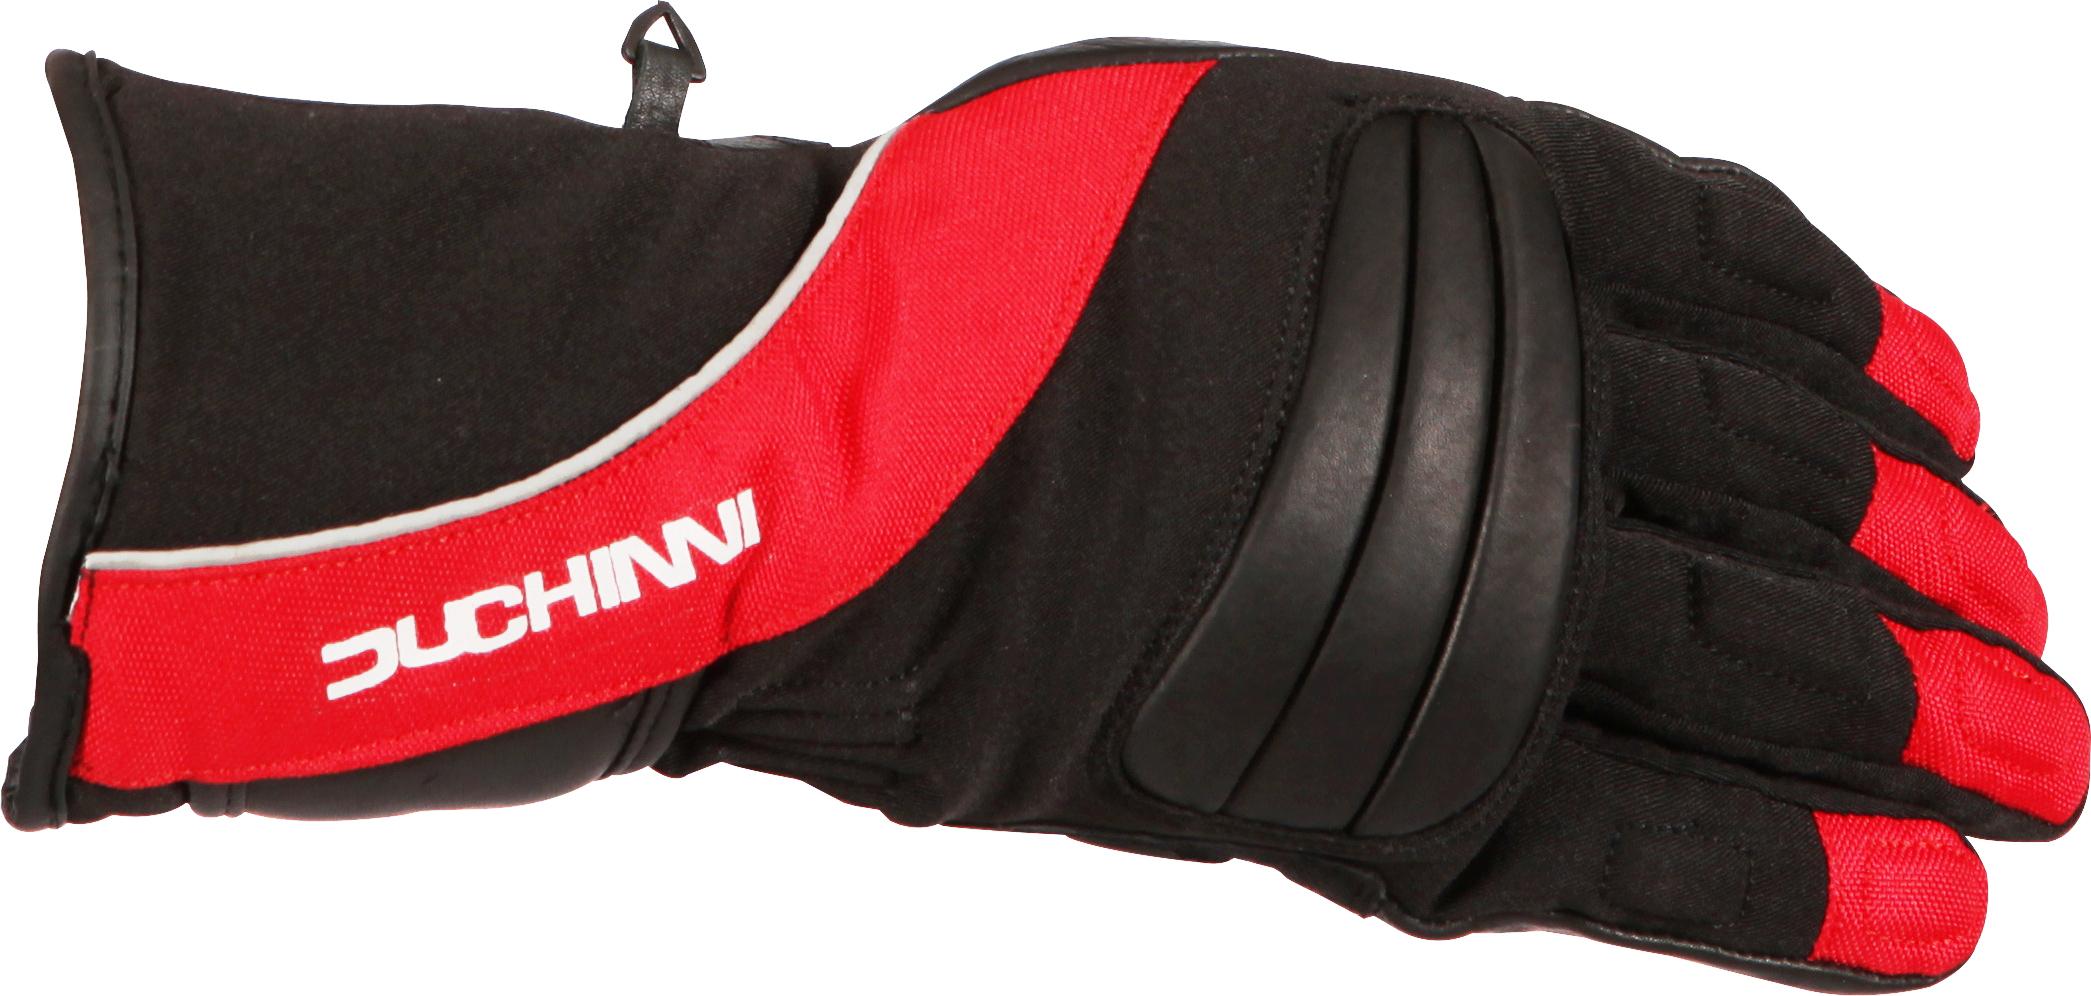 Duchinni Vienna Gloves Black/Red - L